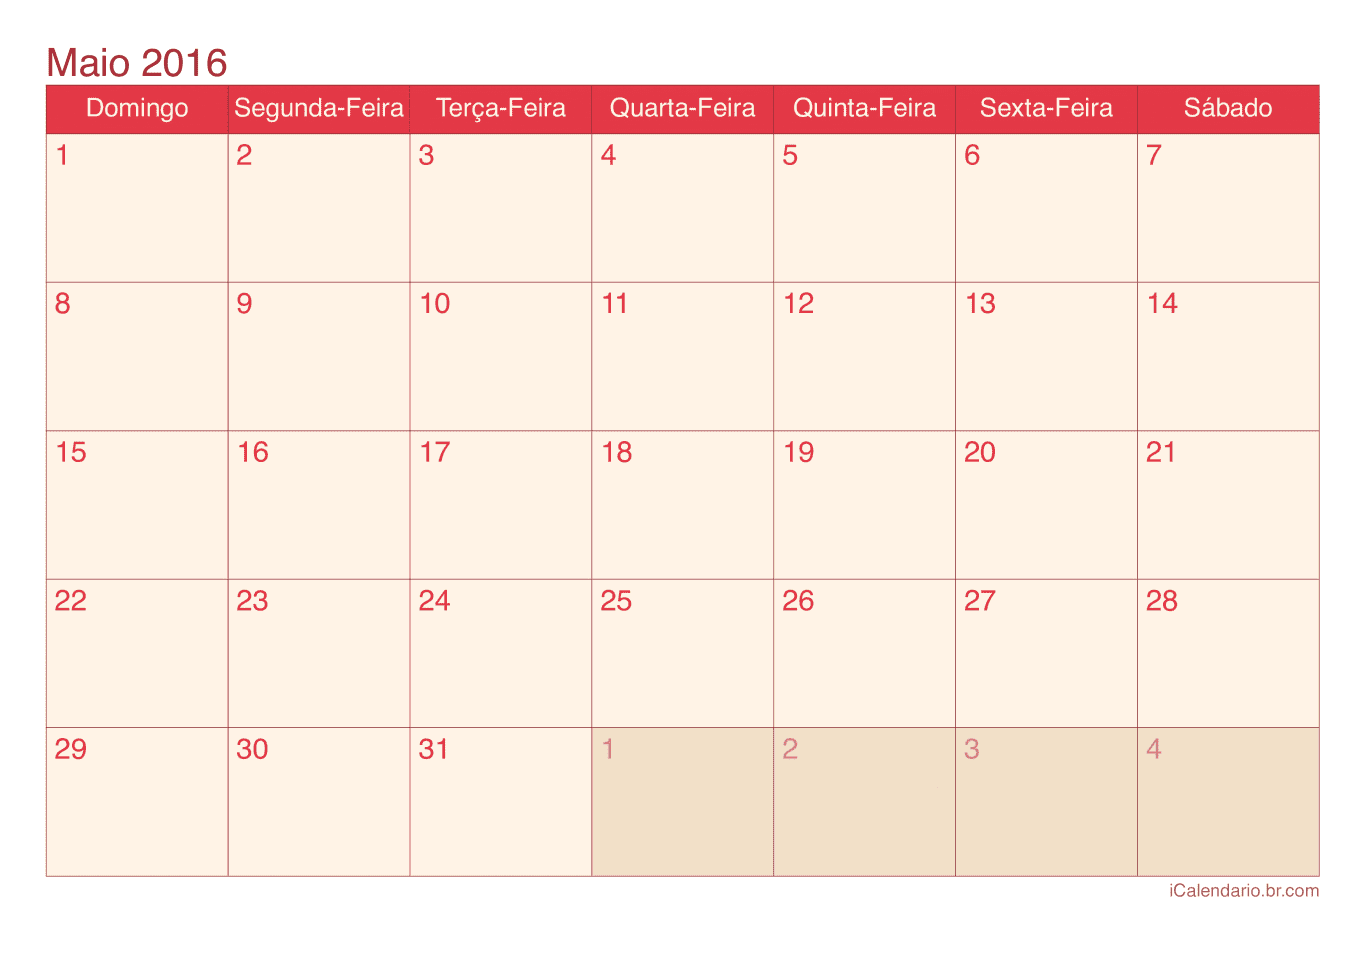 Calendário de maio 2016 - Cherry